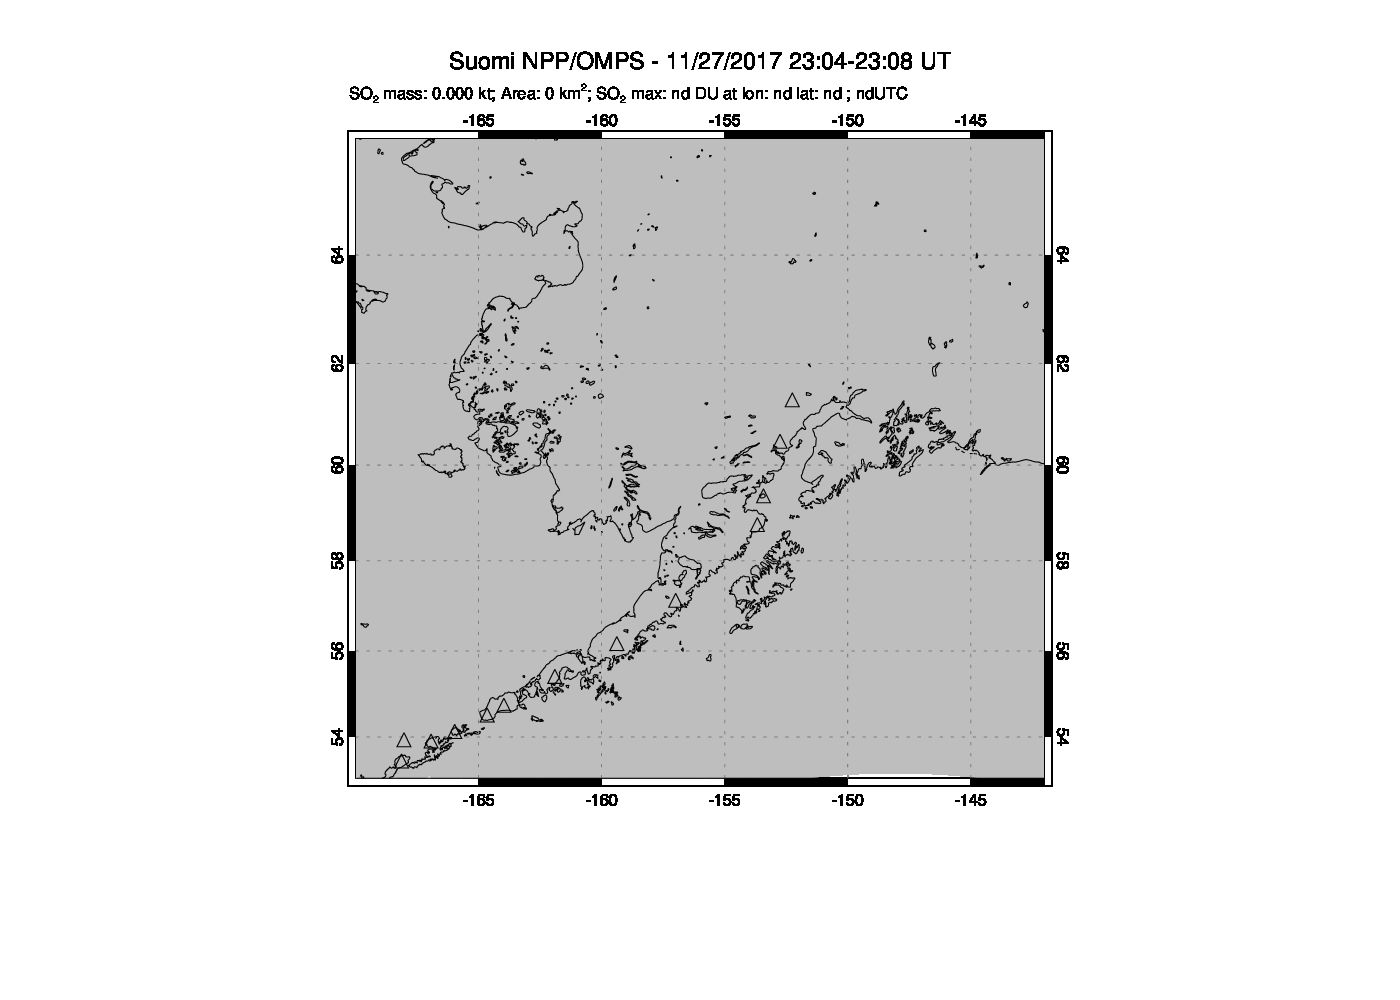 A sulfur dioxide image over Alaska, USA on Nov 27, 2017.